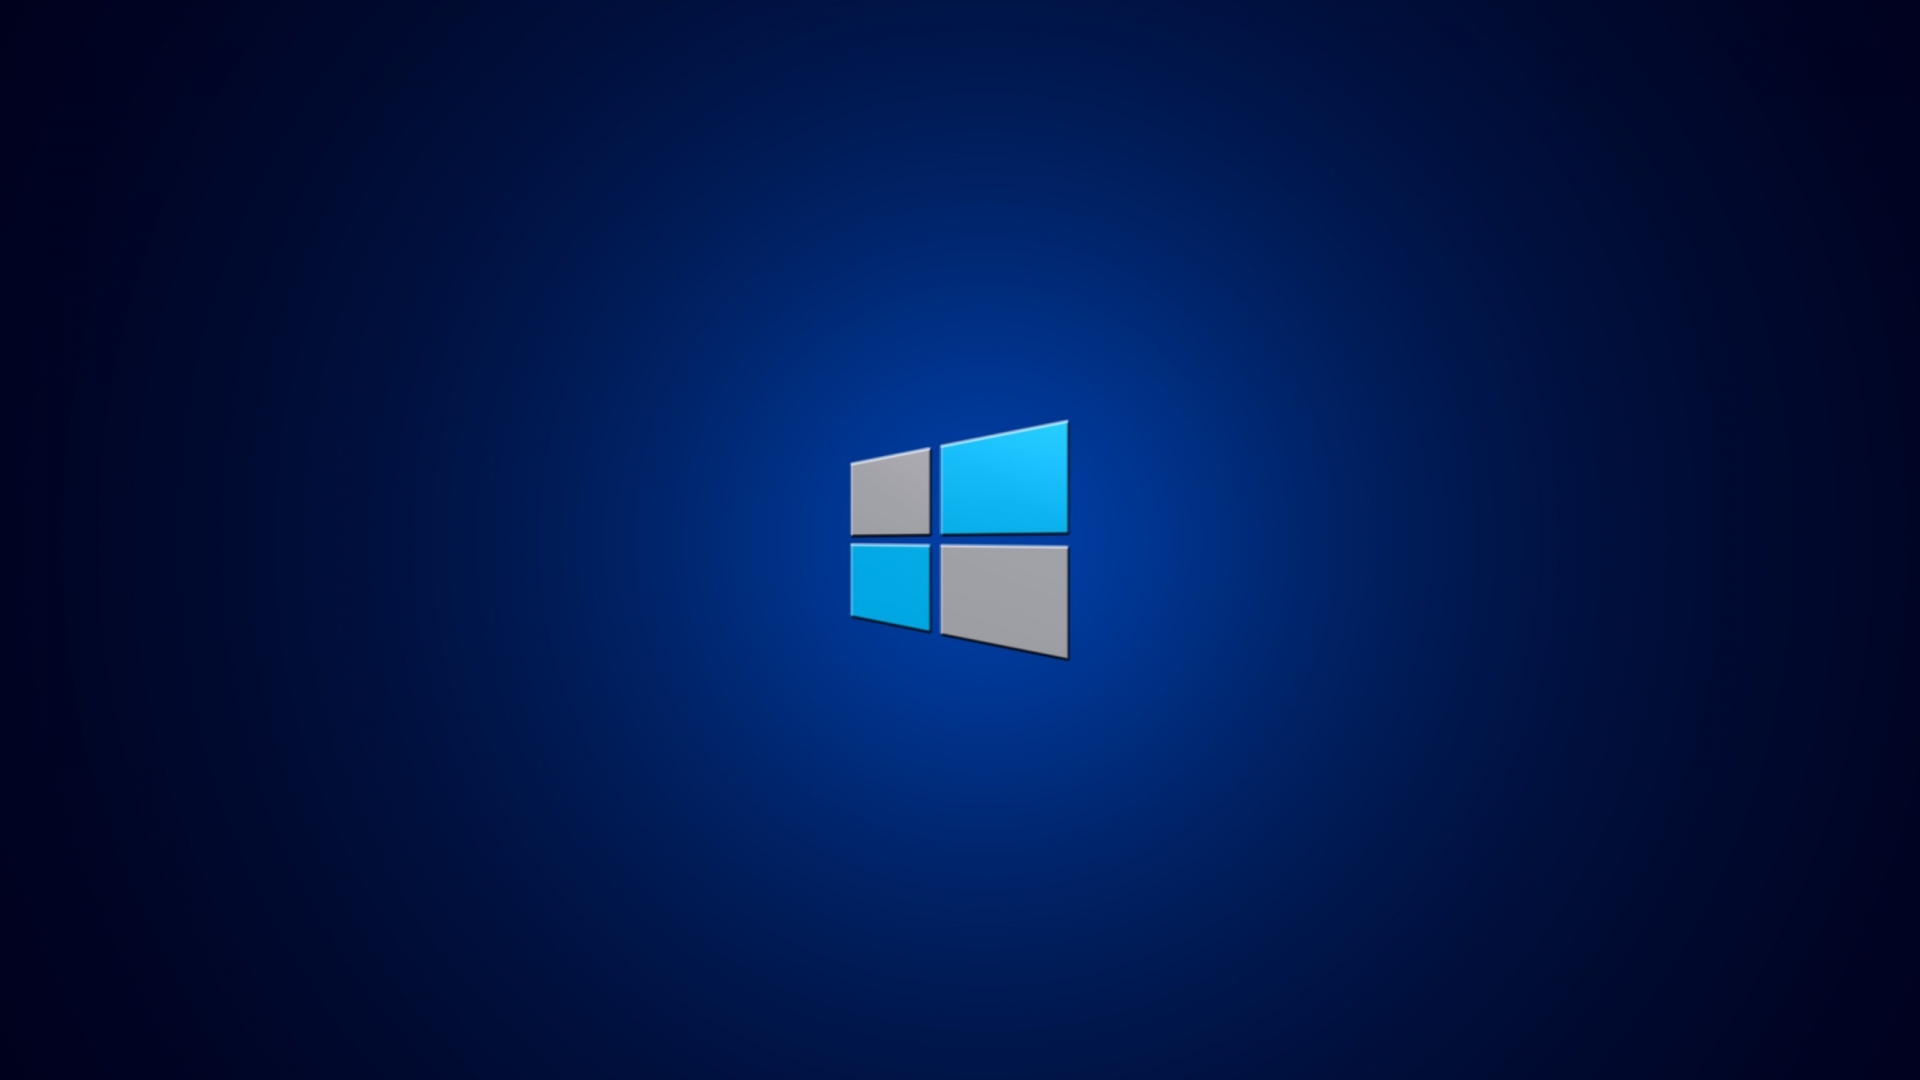 windows hd wallpaper for your desktop background or desktop